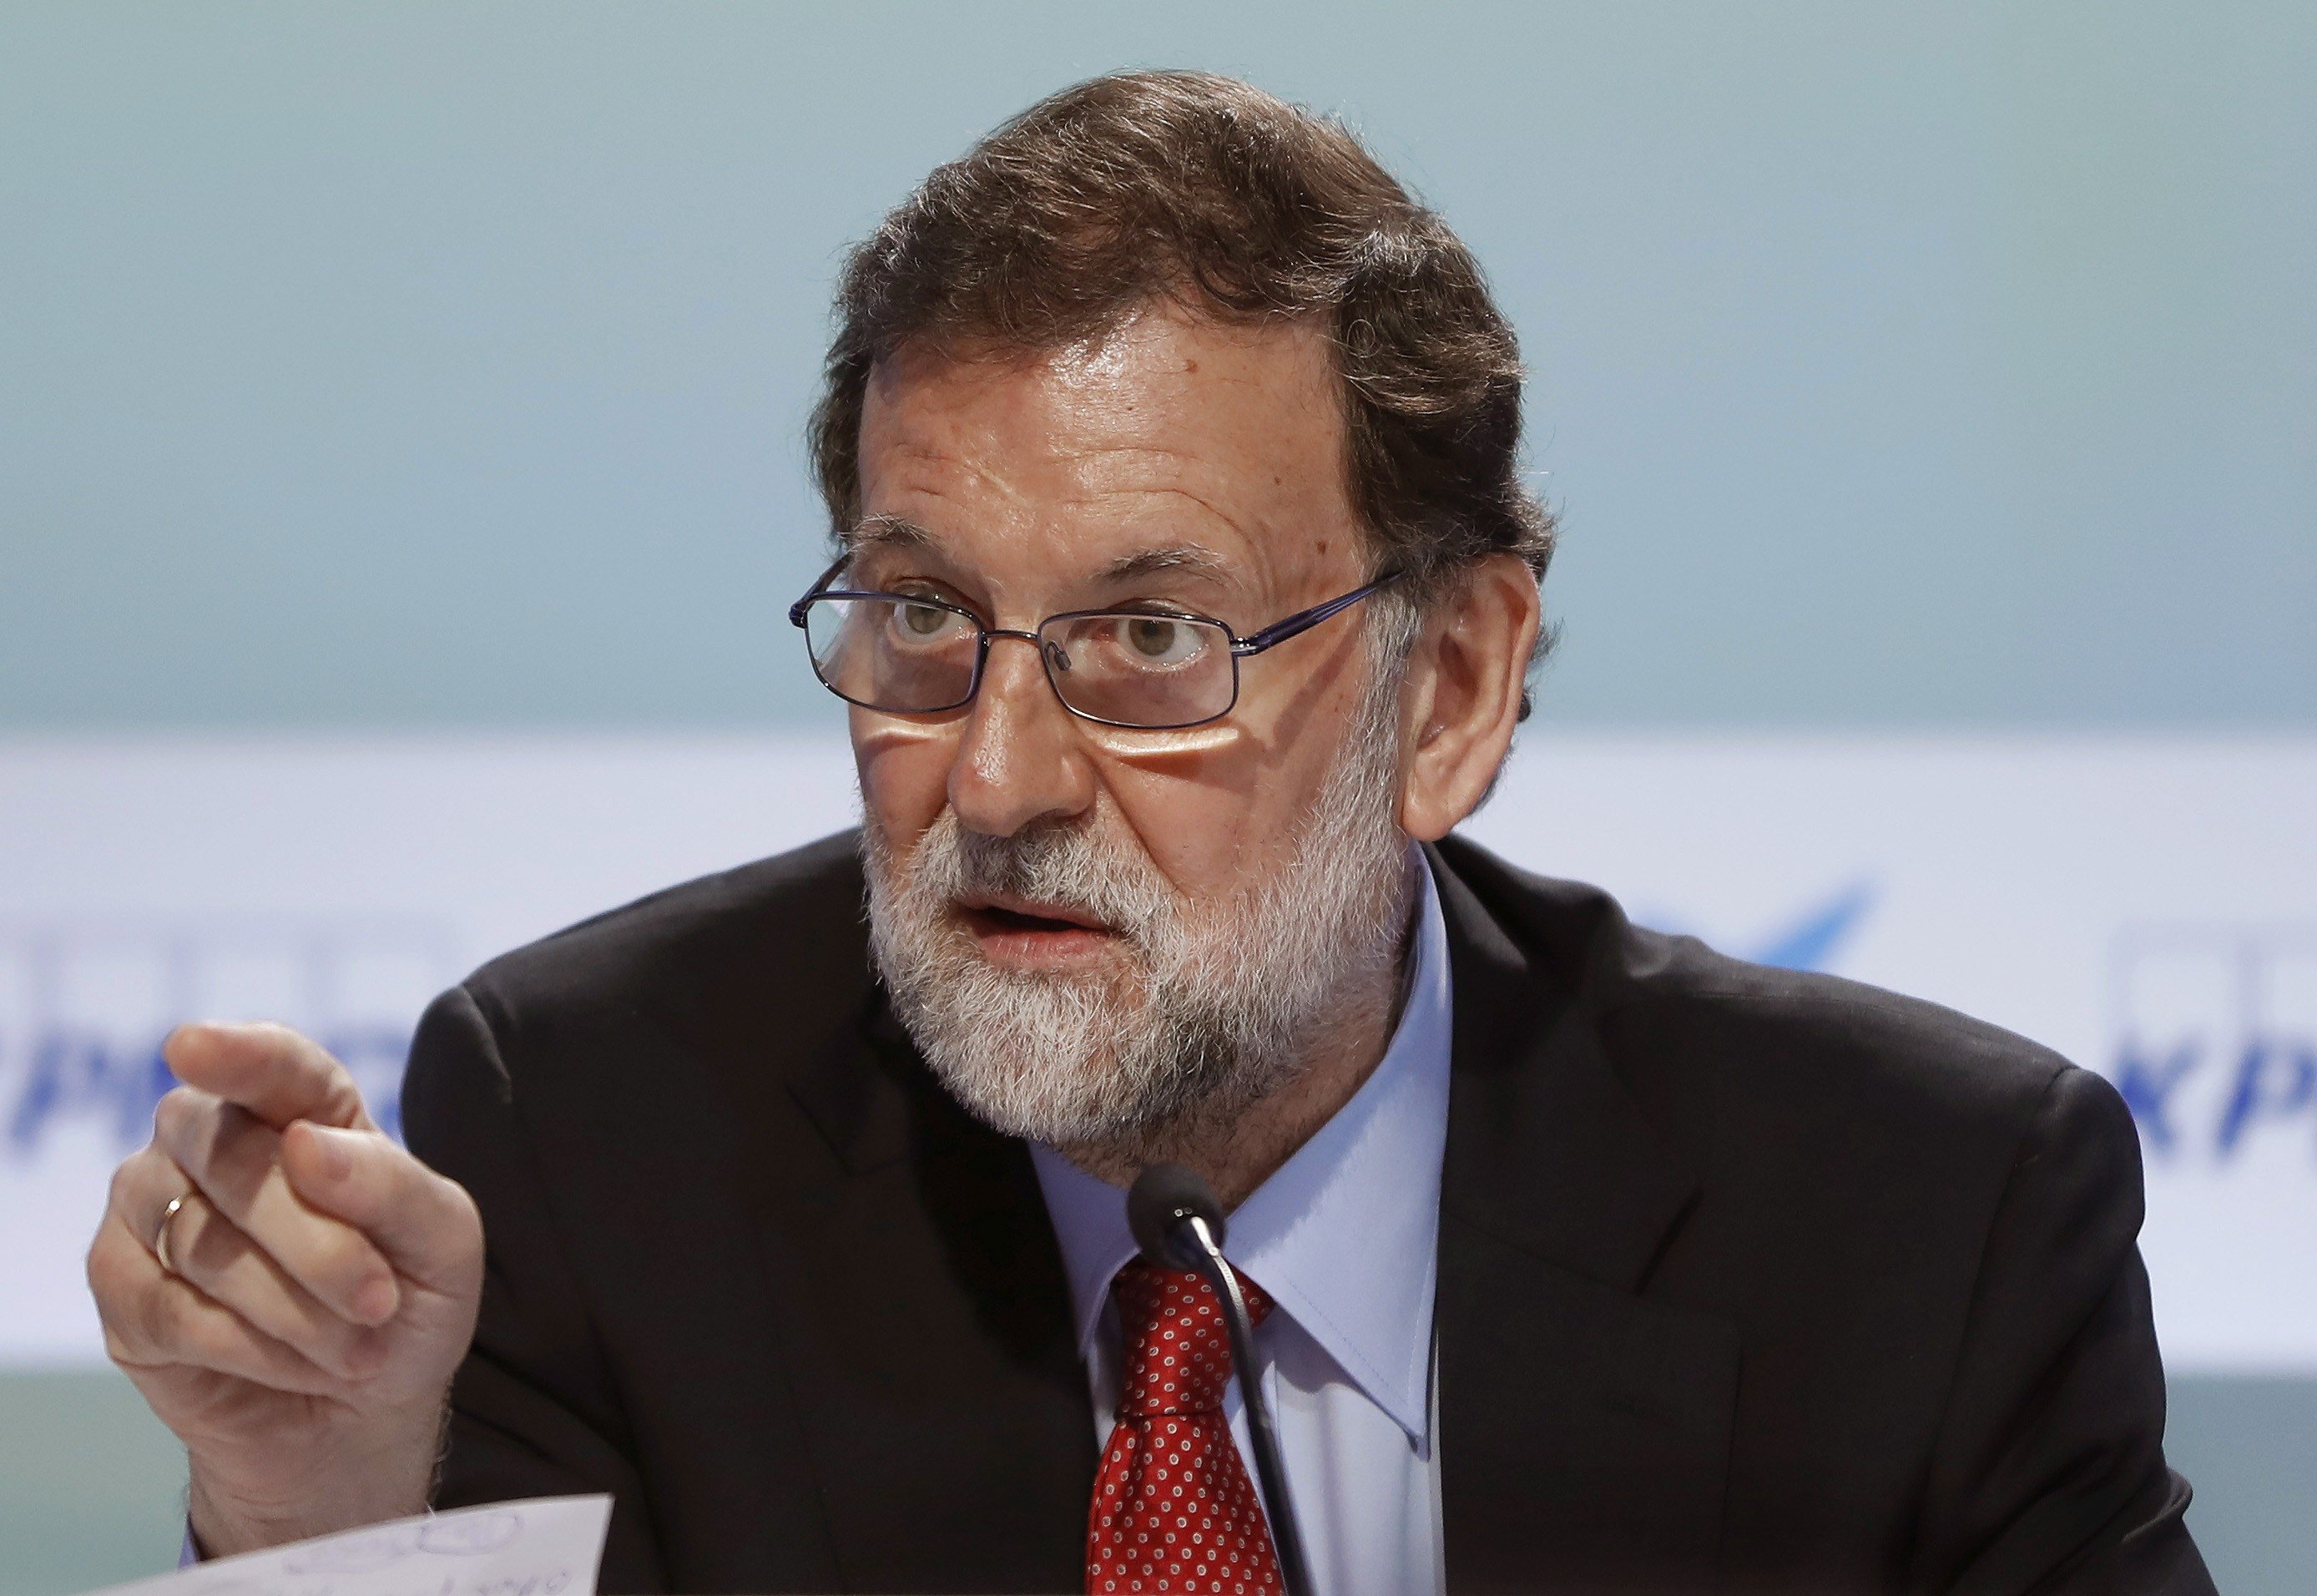 VÍDEO: Rajoy ya puso en duda el cambio climático cuando era candidato